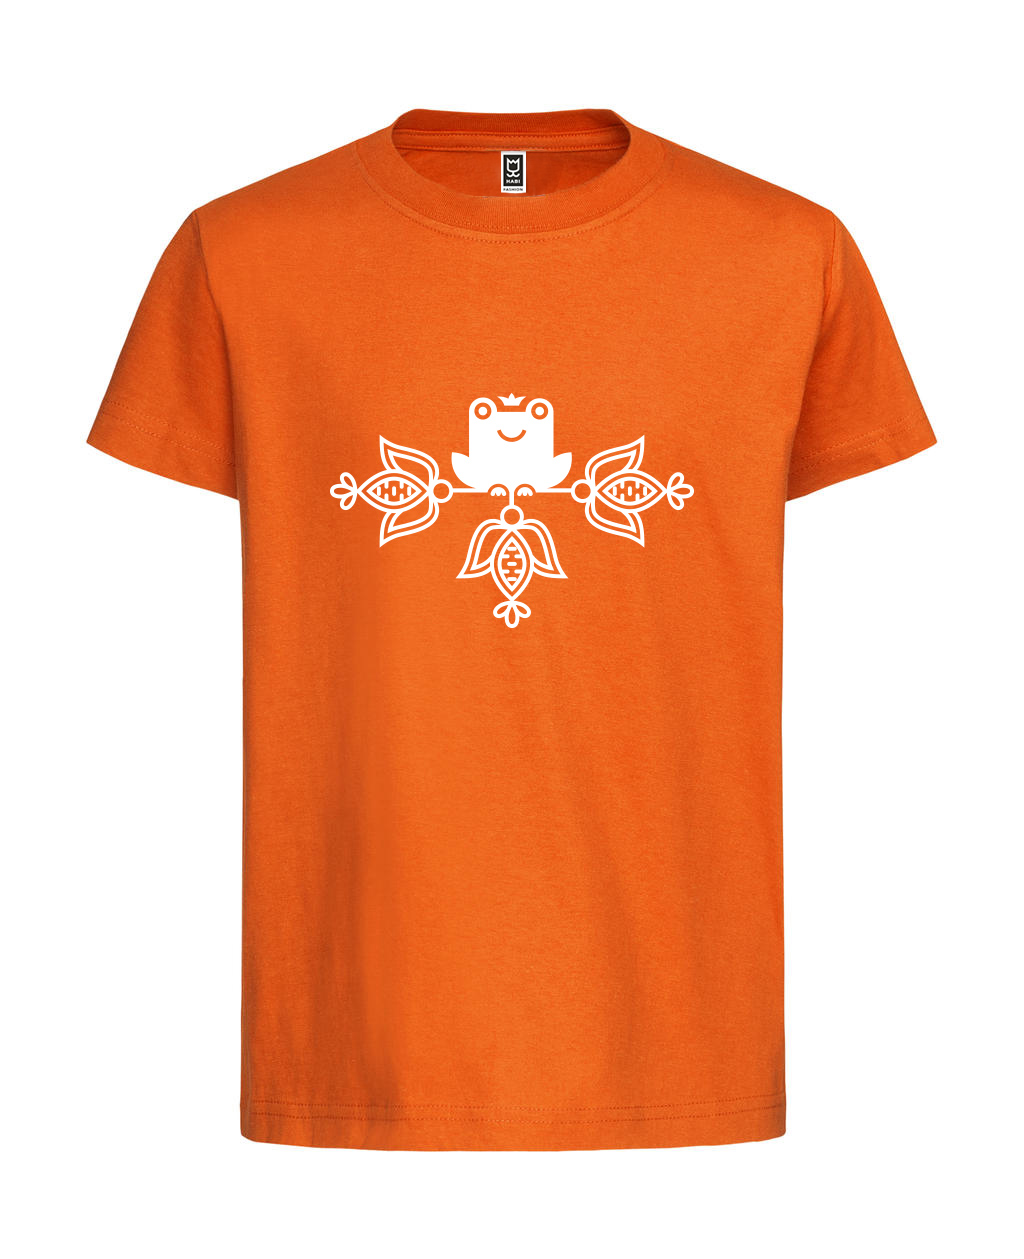 Detské tričko žaba na prameni, Detva - Orange